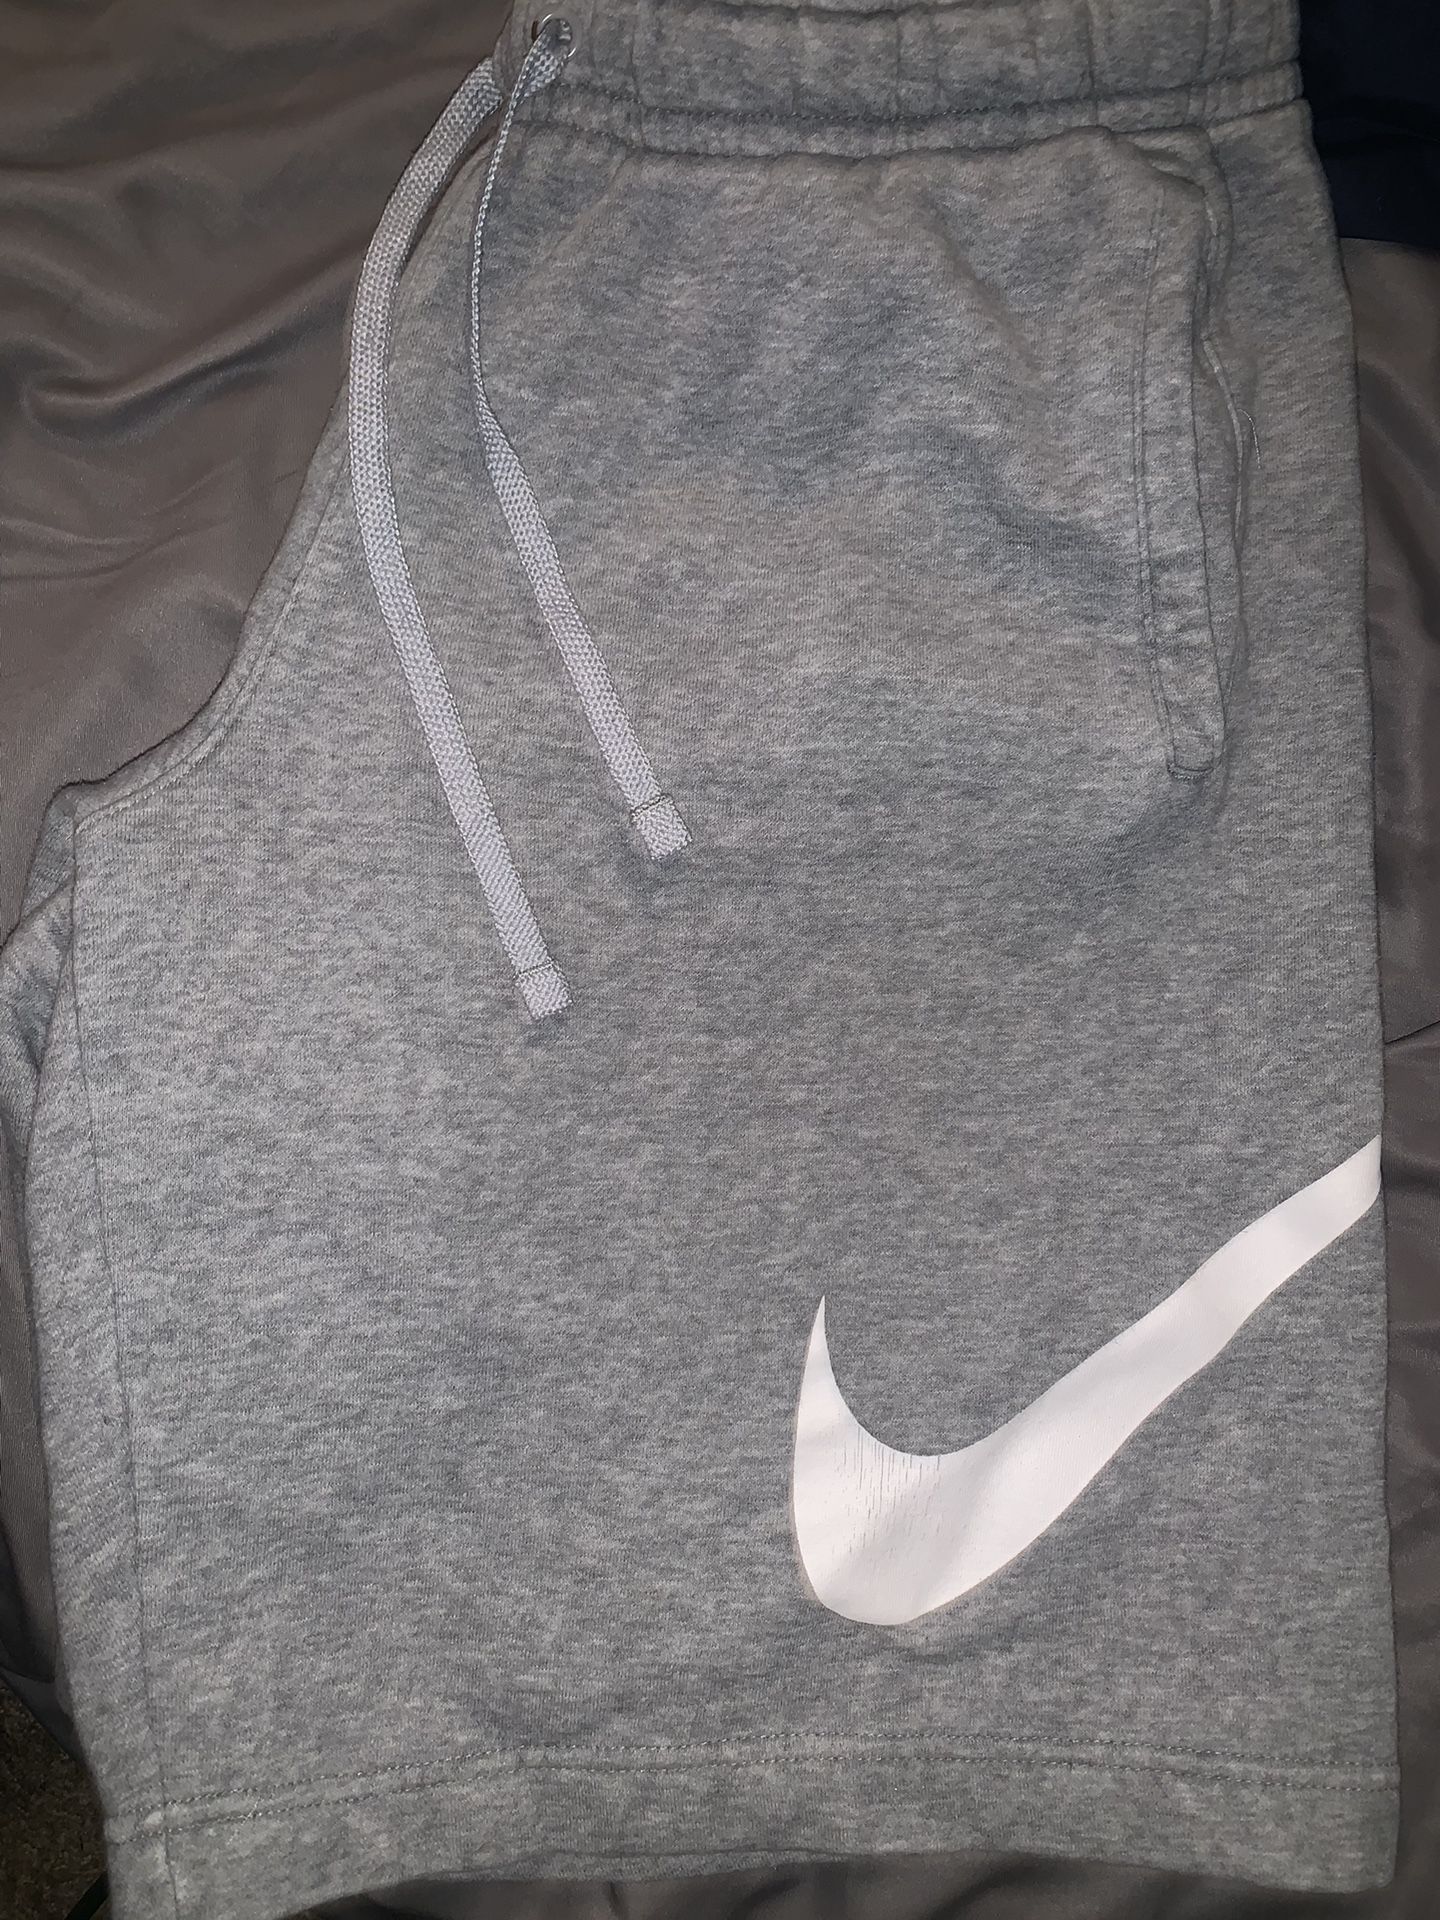 Nike Sweat Shorts